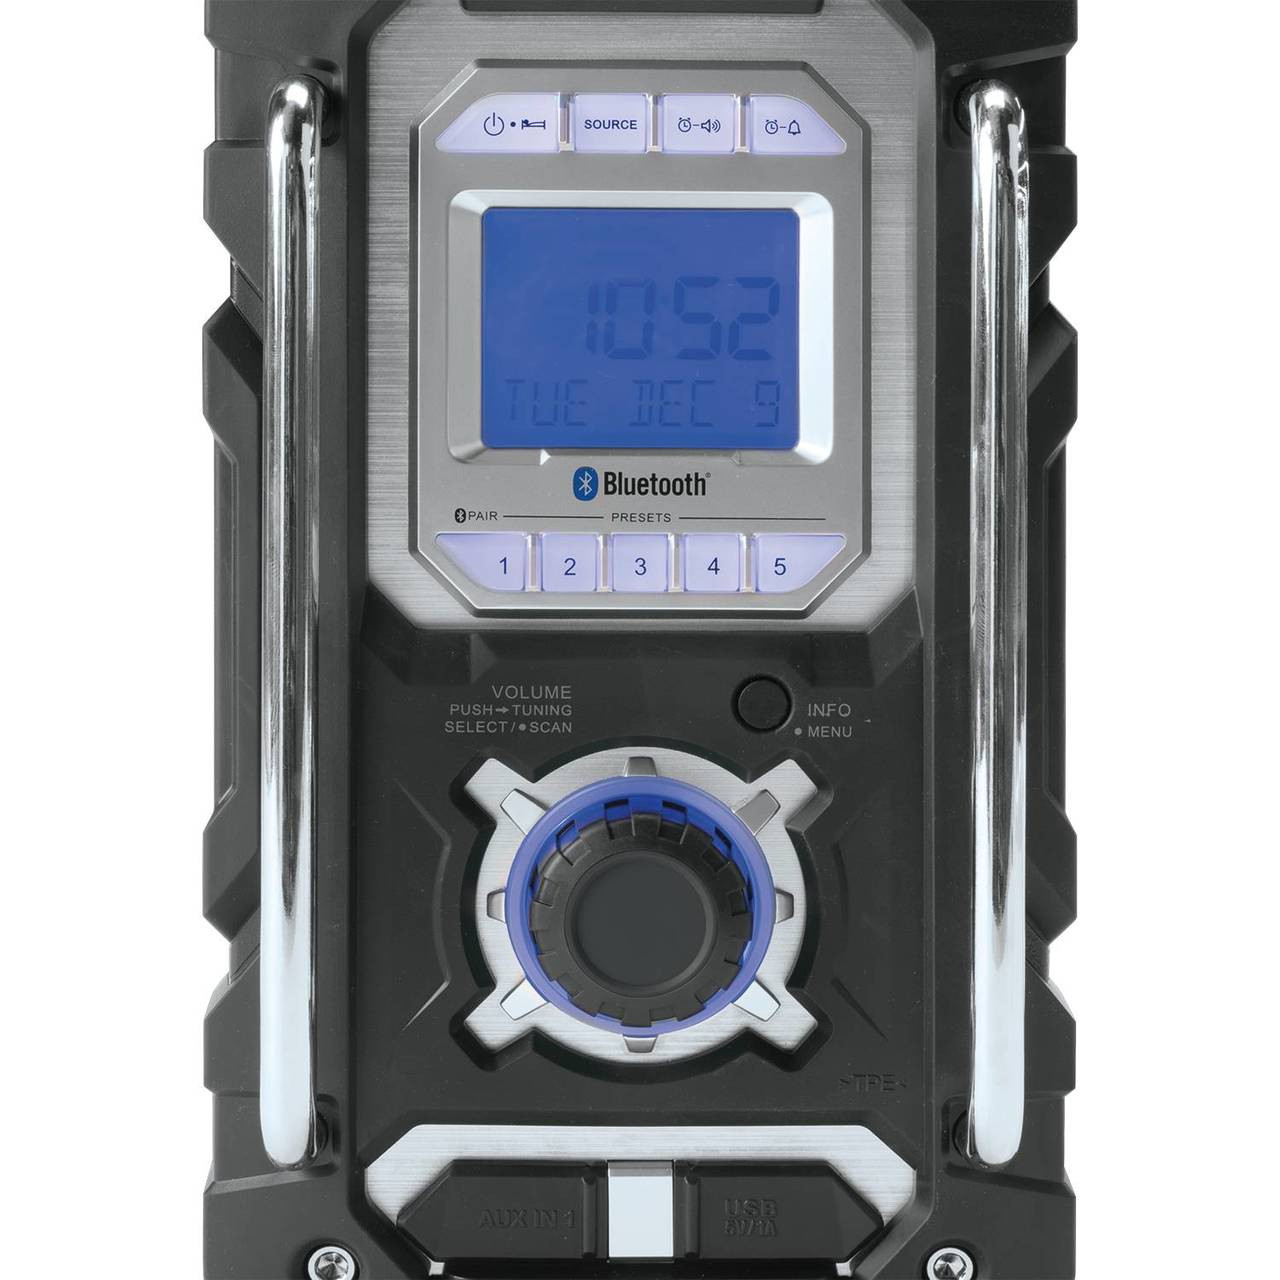 Makita XRM06B 18V LXT Lithium-Ion Cordless Bluetooth Job Site Radio Tool  Only